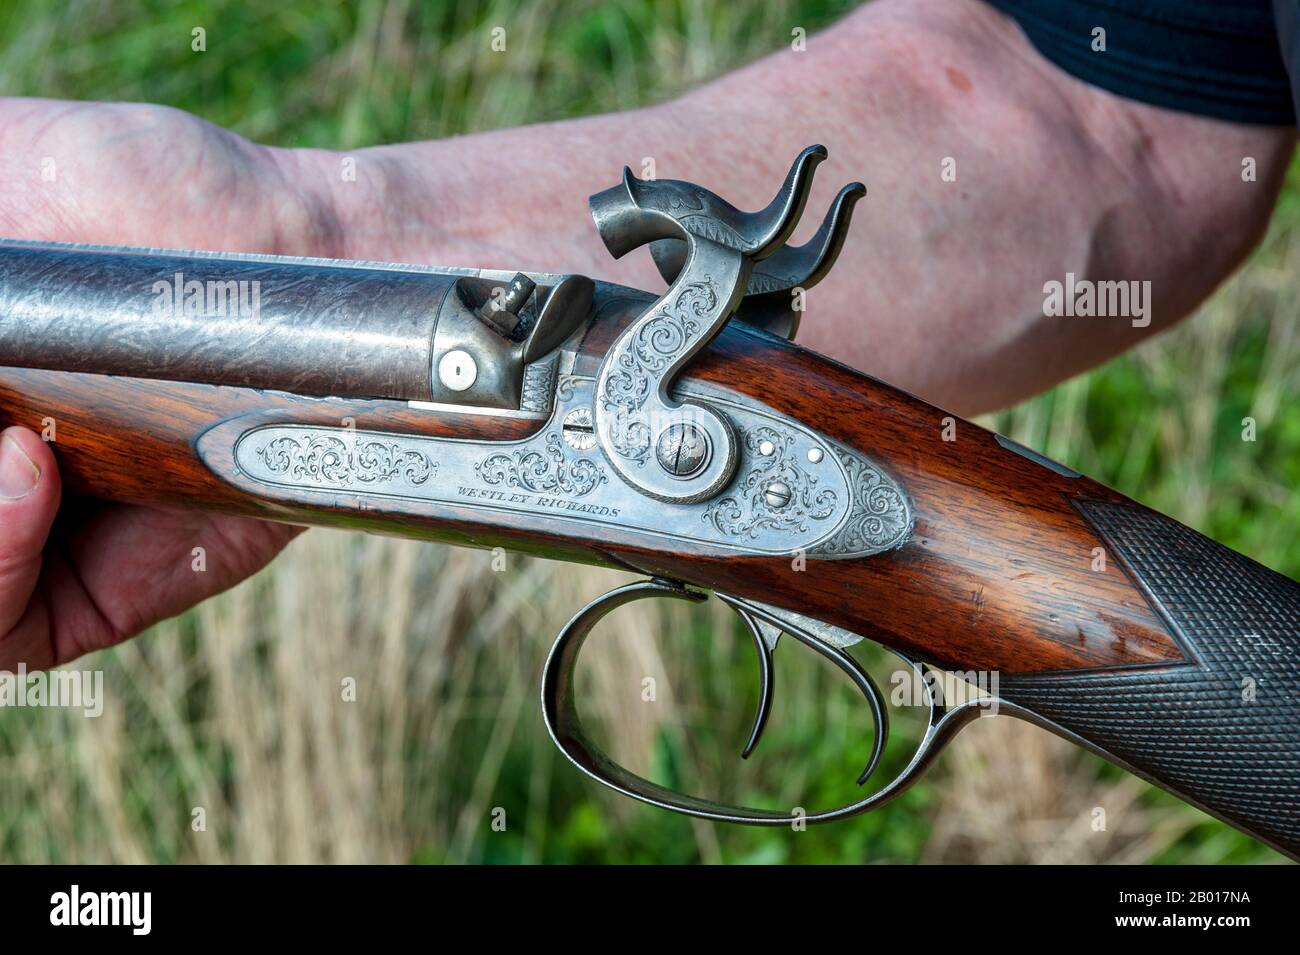 Un fusil de chasse à percussion à double canon 11 trous de Birmingham, Angleterre, fabricant britannique d'armes Westley Richards, fabriqué en 1841 comme pistolet de leur agent de Londres, William Bishop Banque D'Images